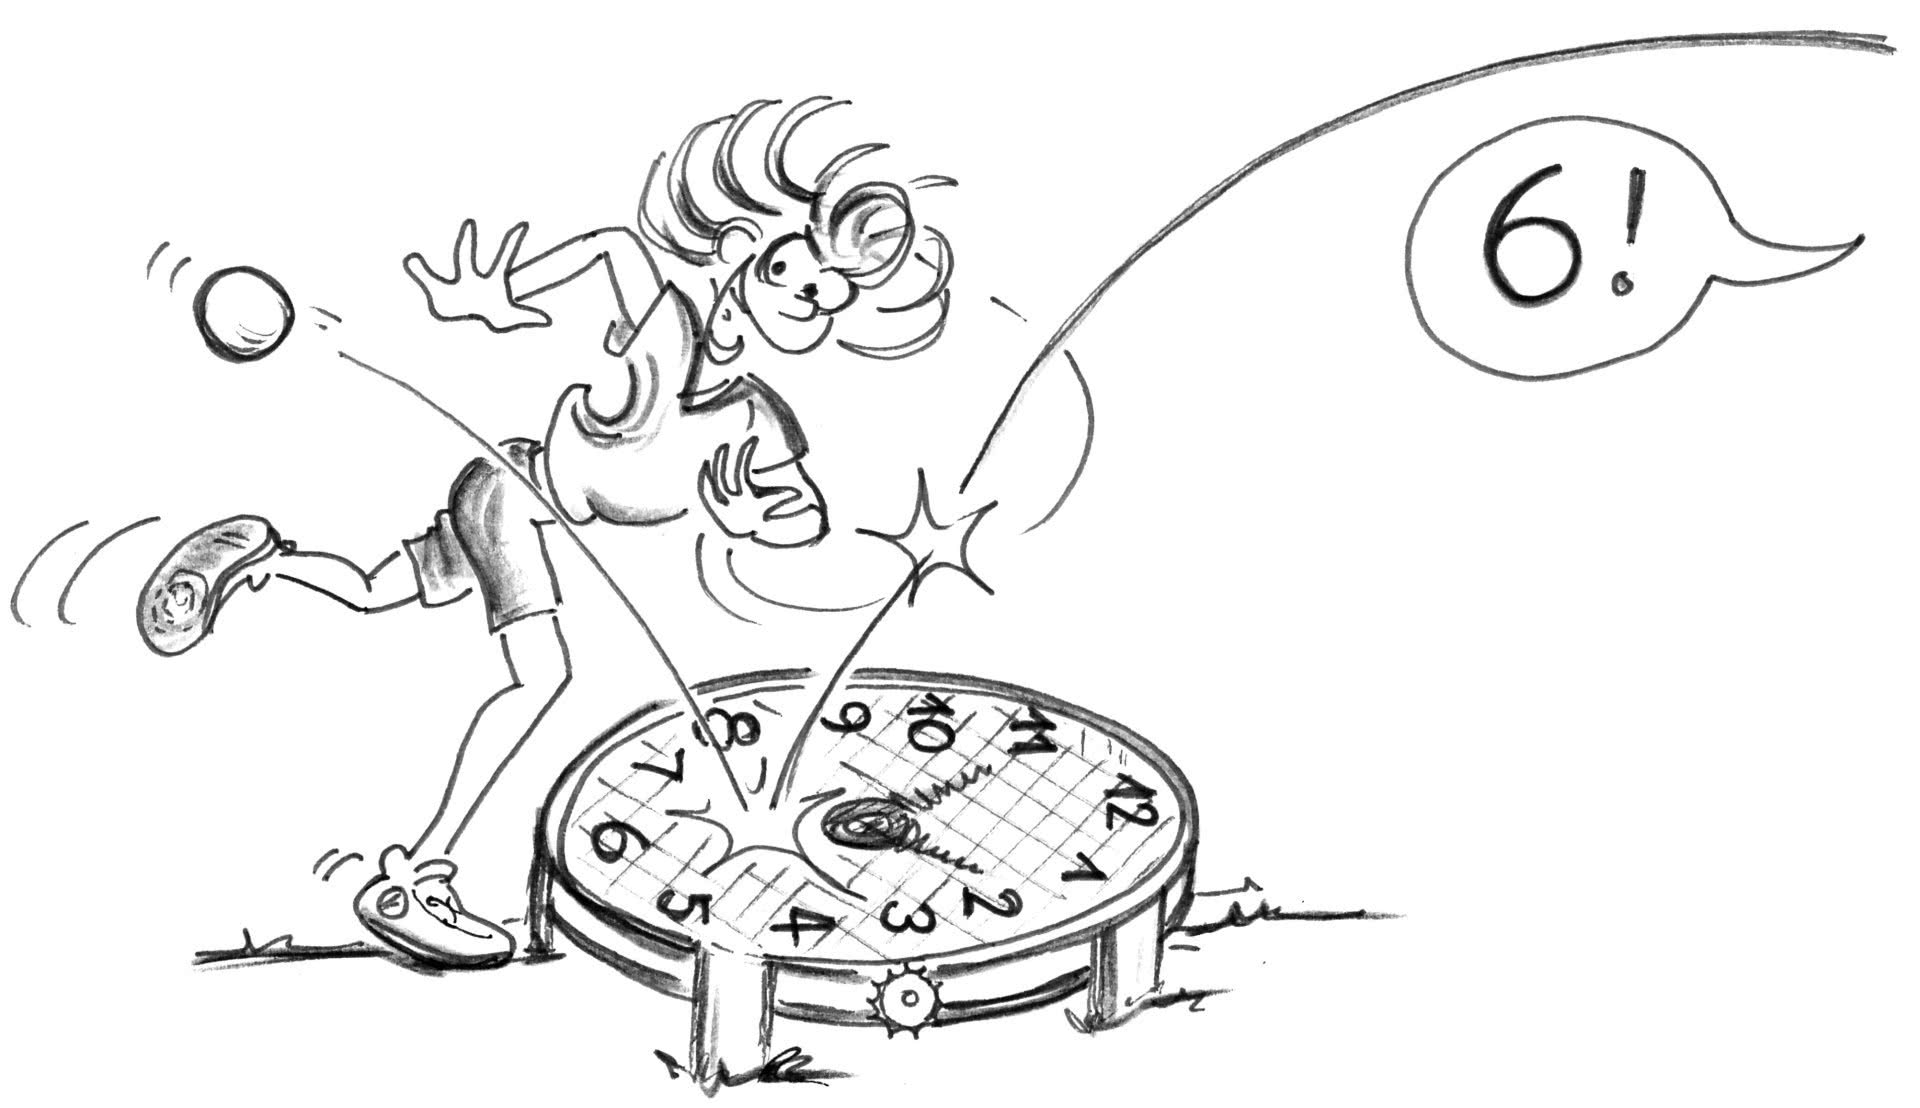 Dessin: un joueur frappe sur un filet sur lequel sont indiquées les heures d'une montre.